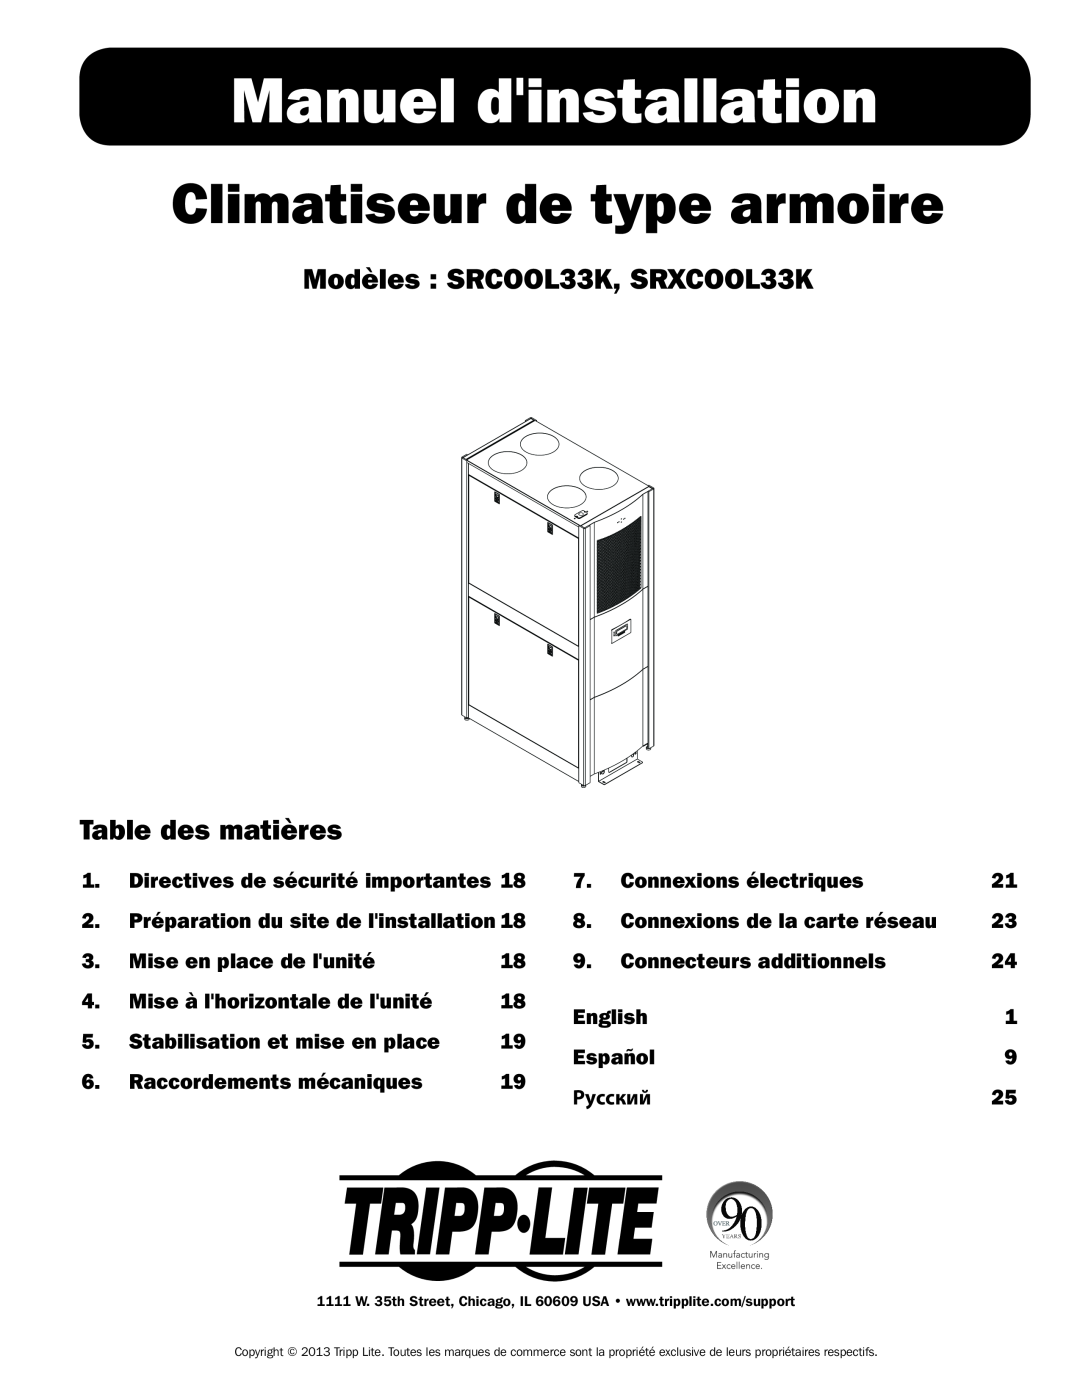 Tripp Lite Manuel dinstallation, Climatiseur de type armoire, Modèles SRCOOL33K, SRXCOOL33K, Table des matières 